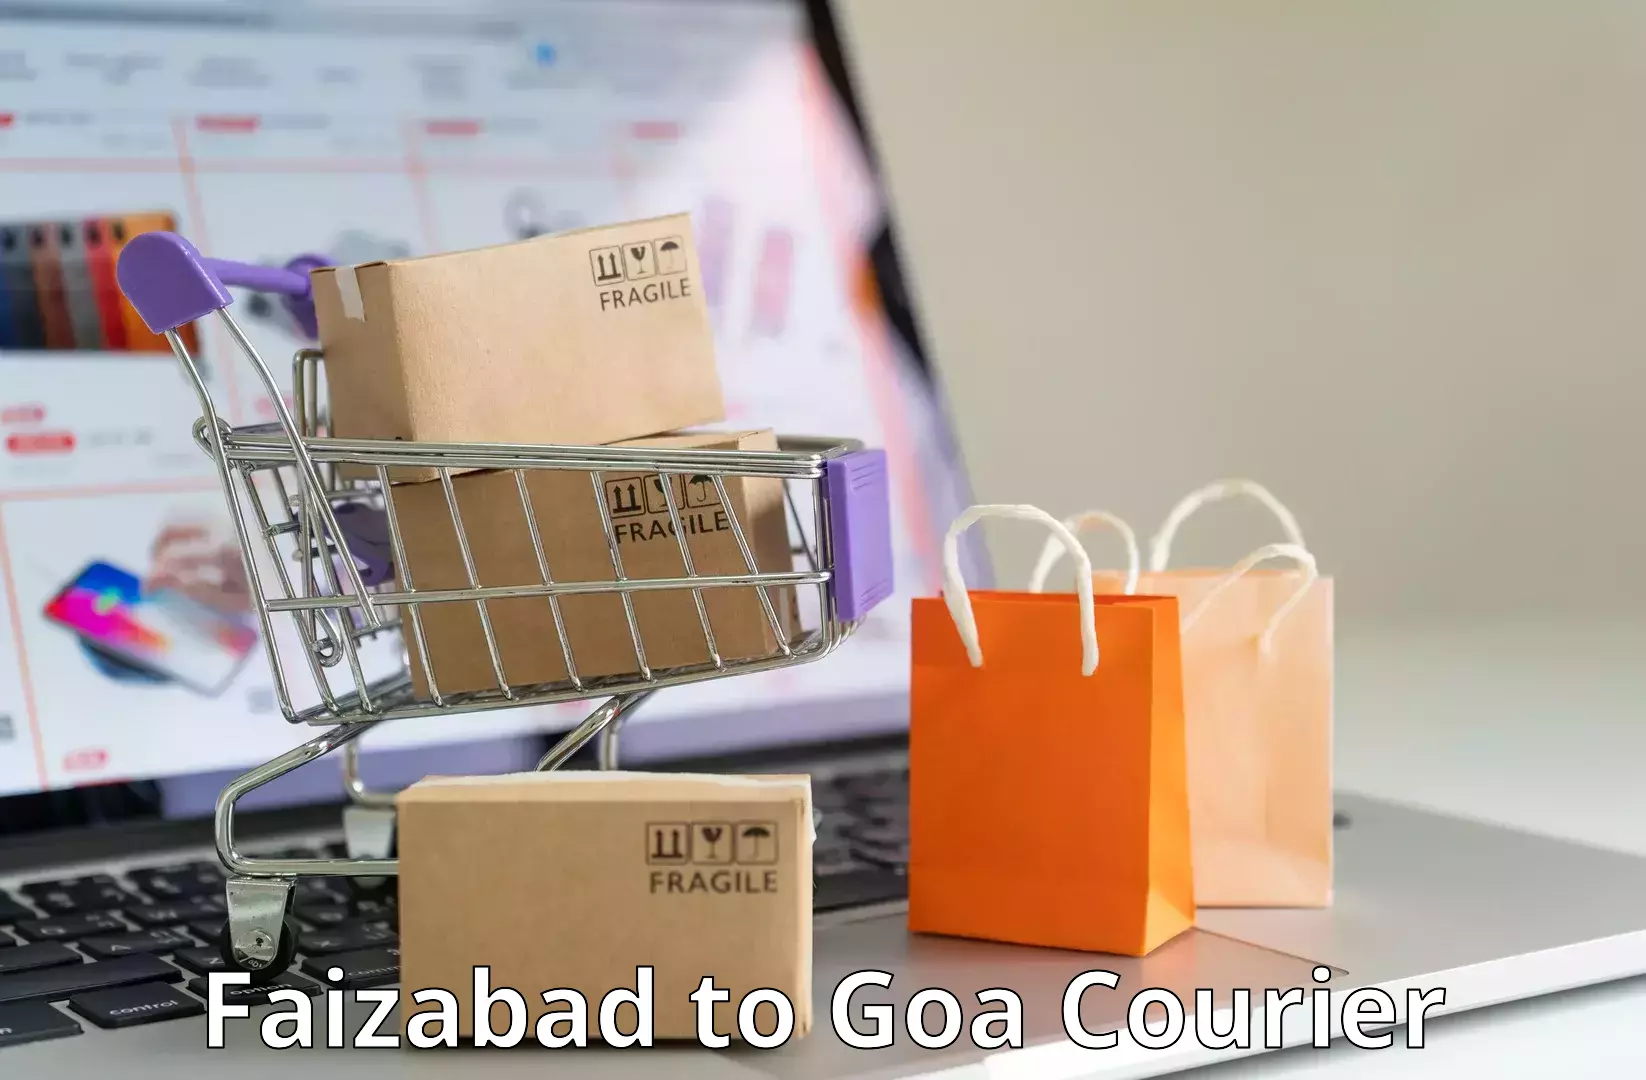 24/7 courier service Faizabad to Panjim